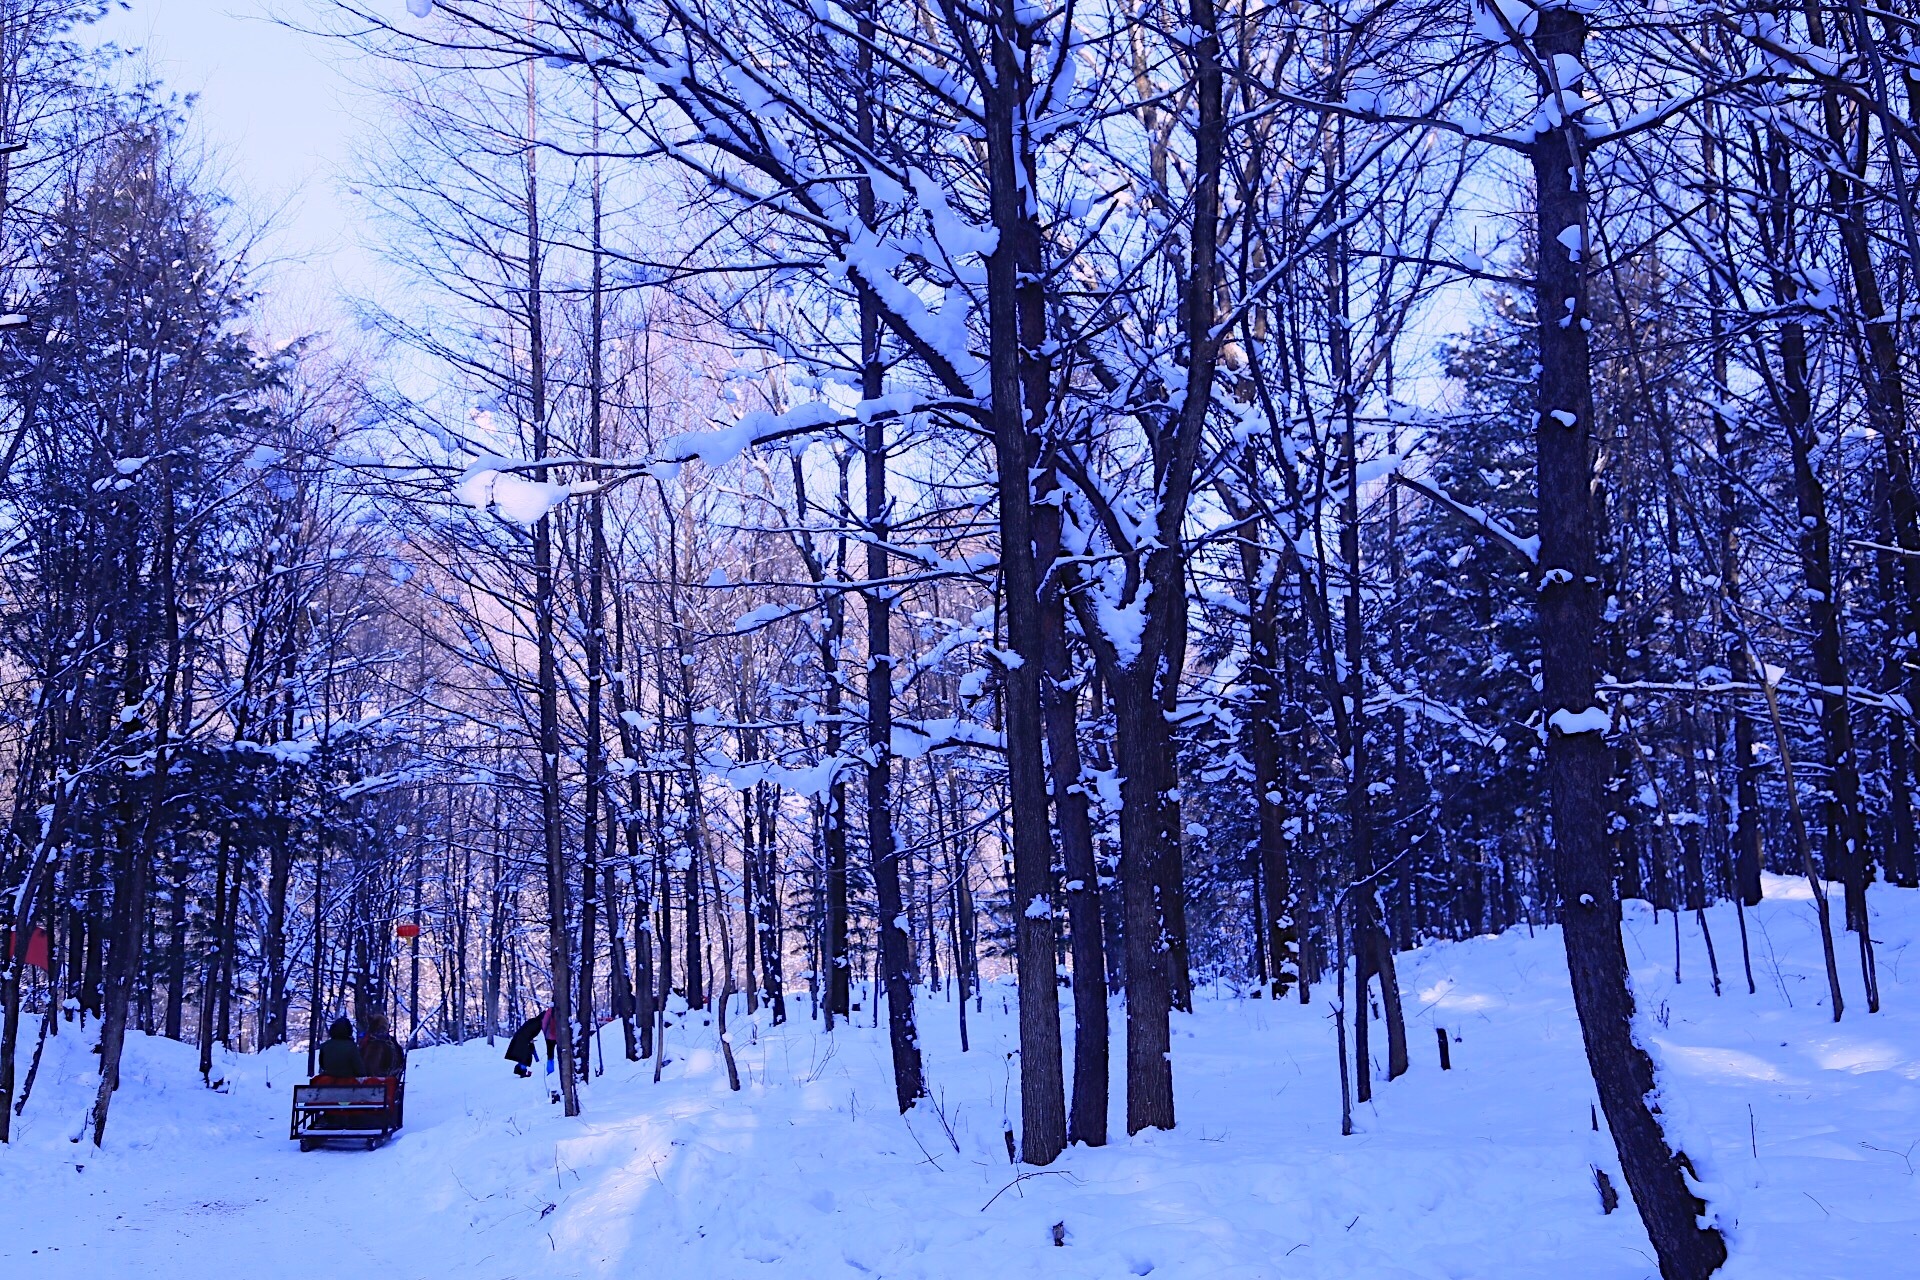 自然唯美的雪景壁纸大全43126_冬雪系列_风景风光类_图库壁纸_68Design